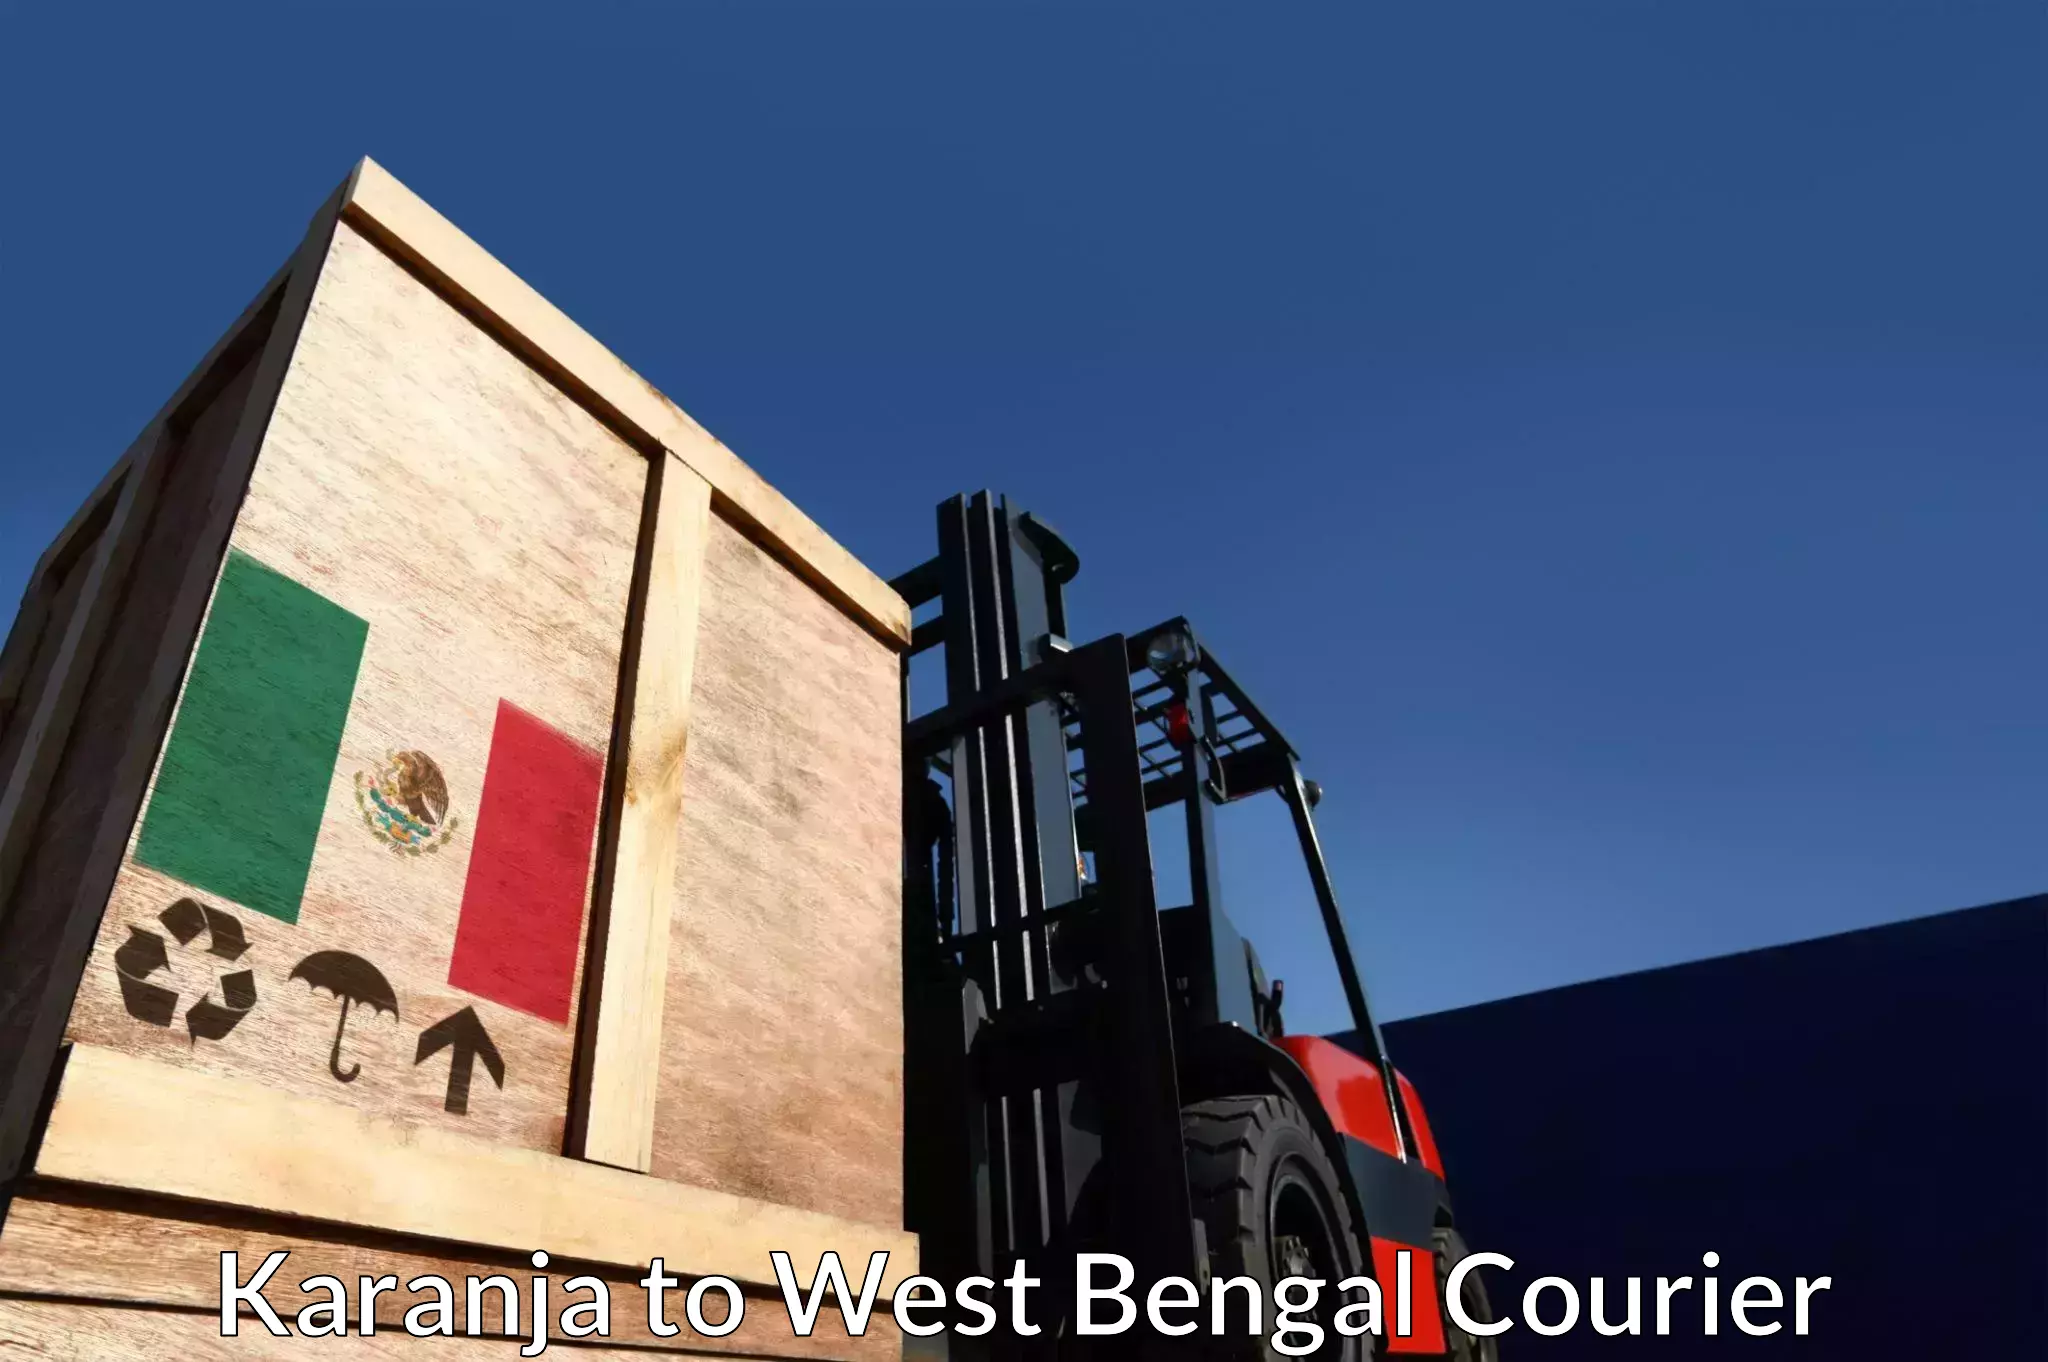 Digital courier platforms Karanja to West Bengal